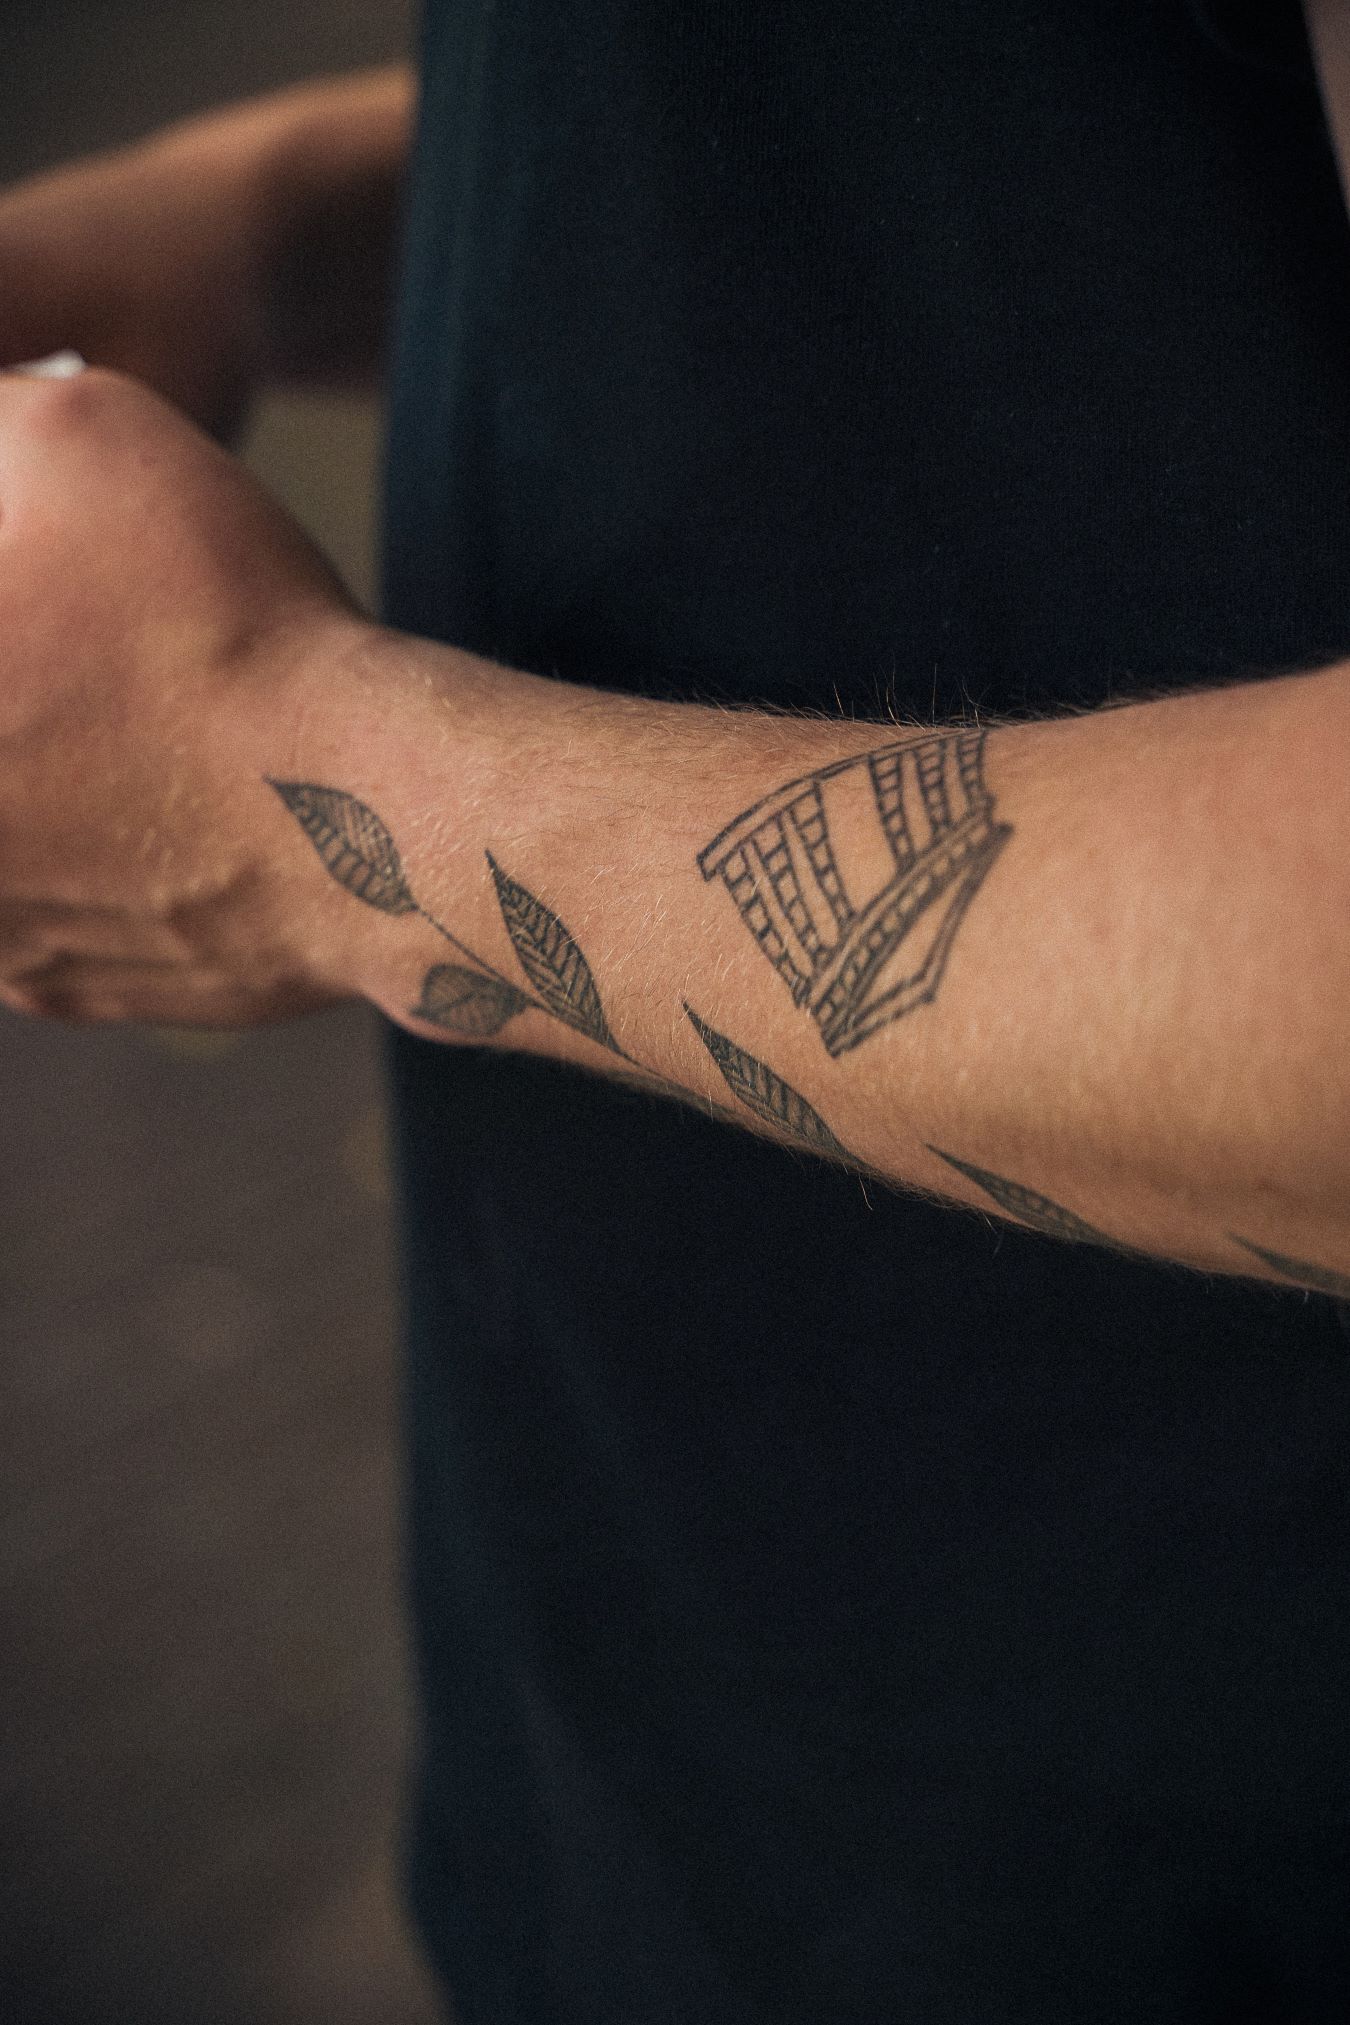 Top more than 150 vine tattoo wrist